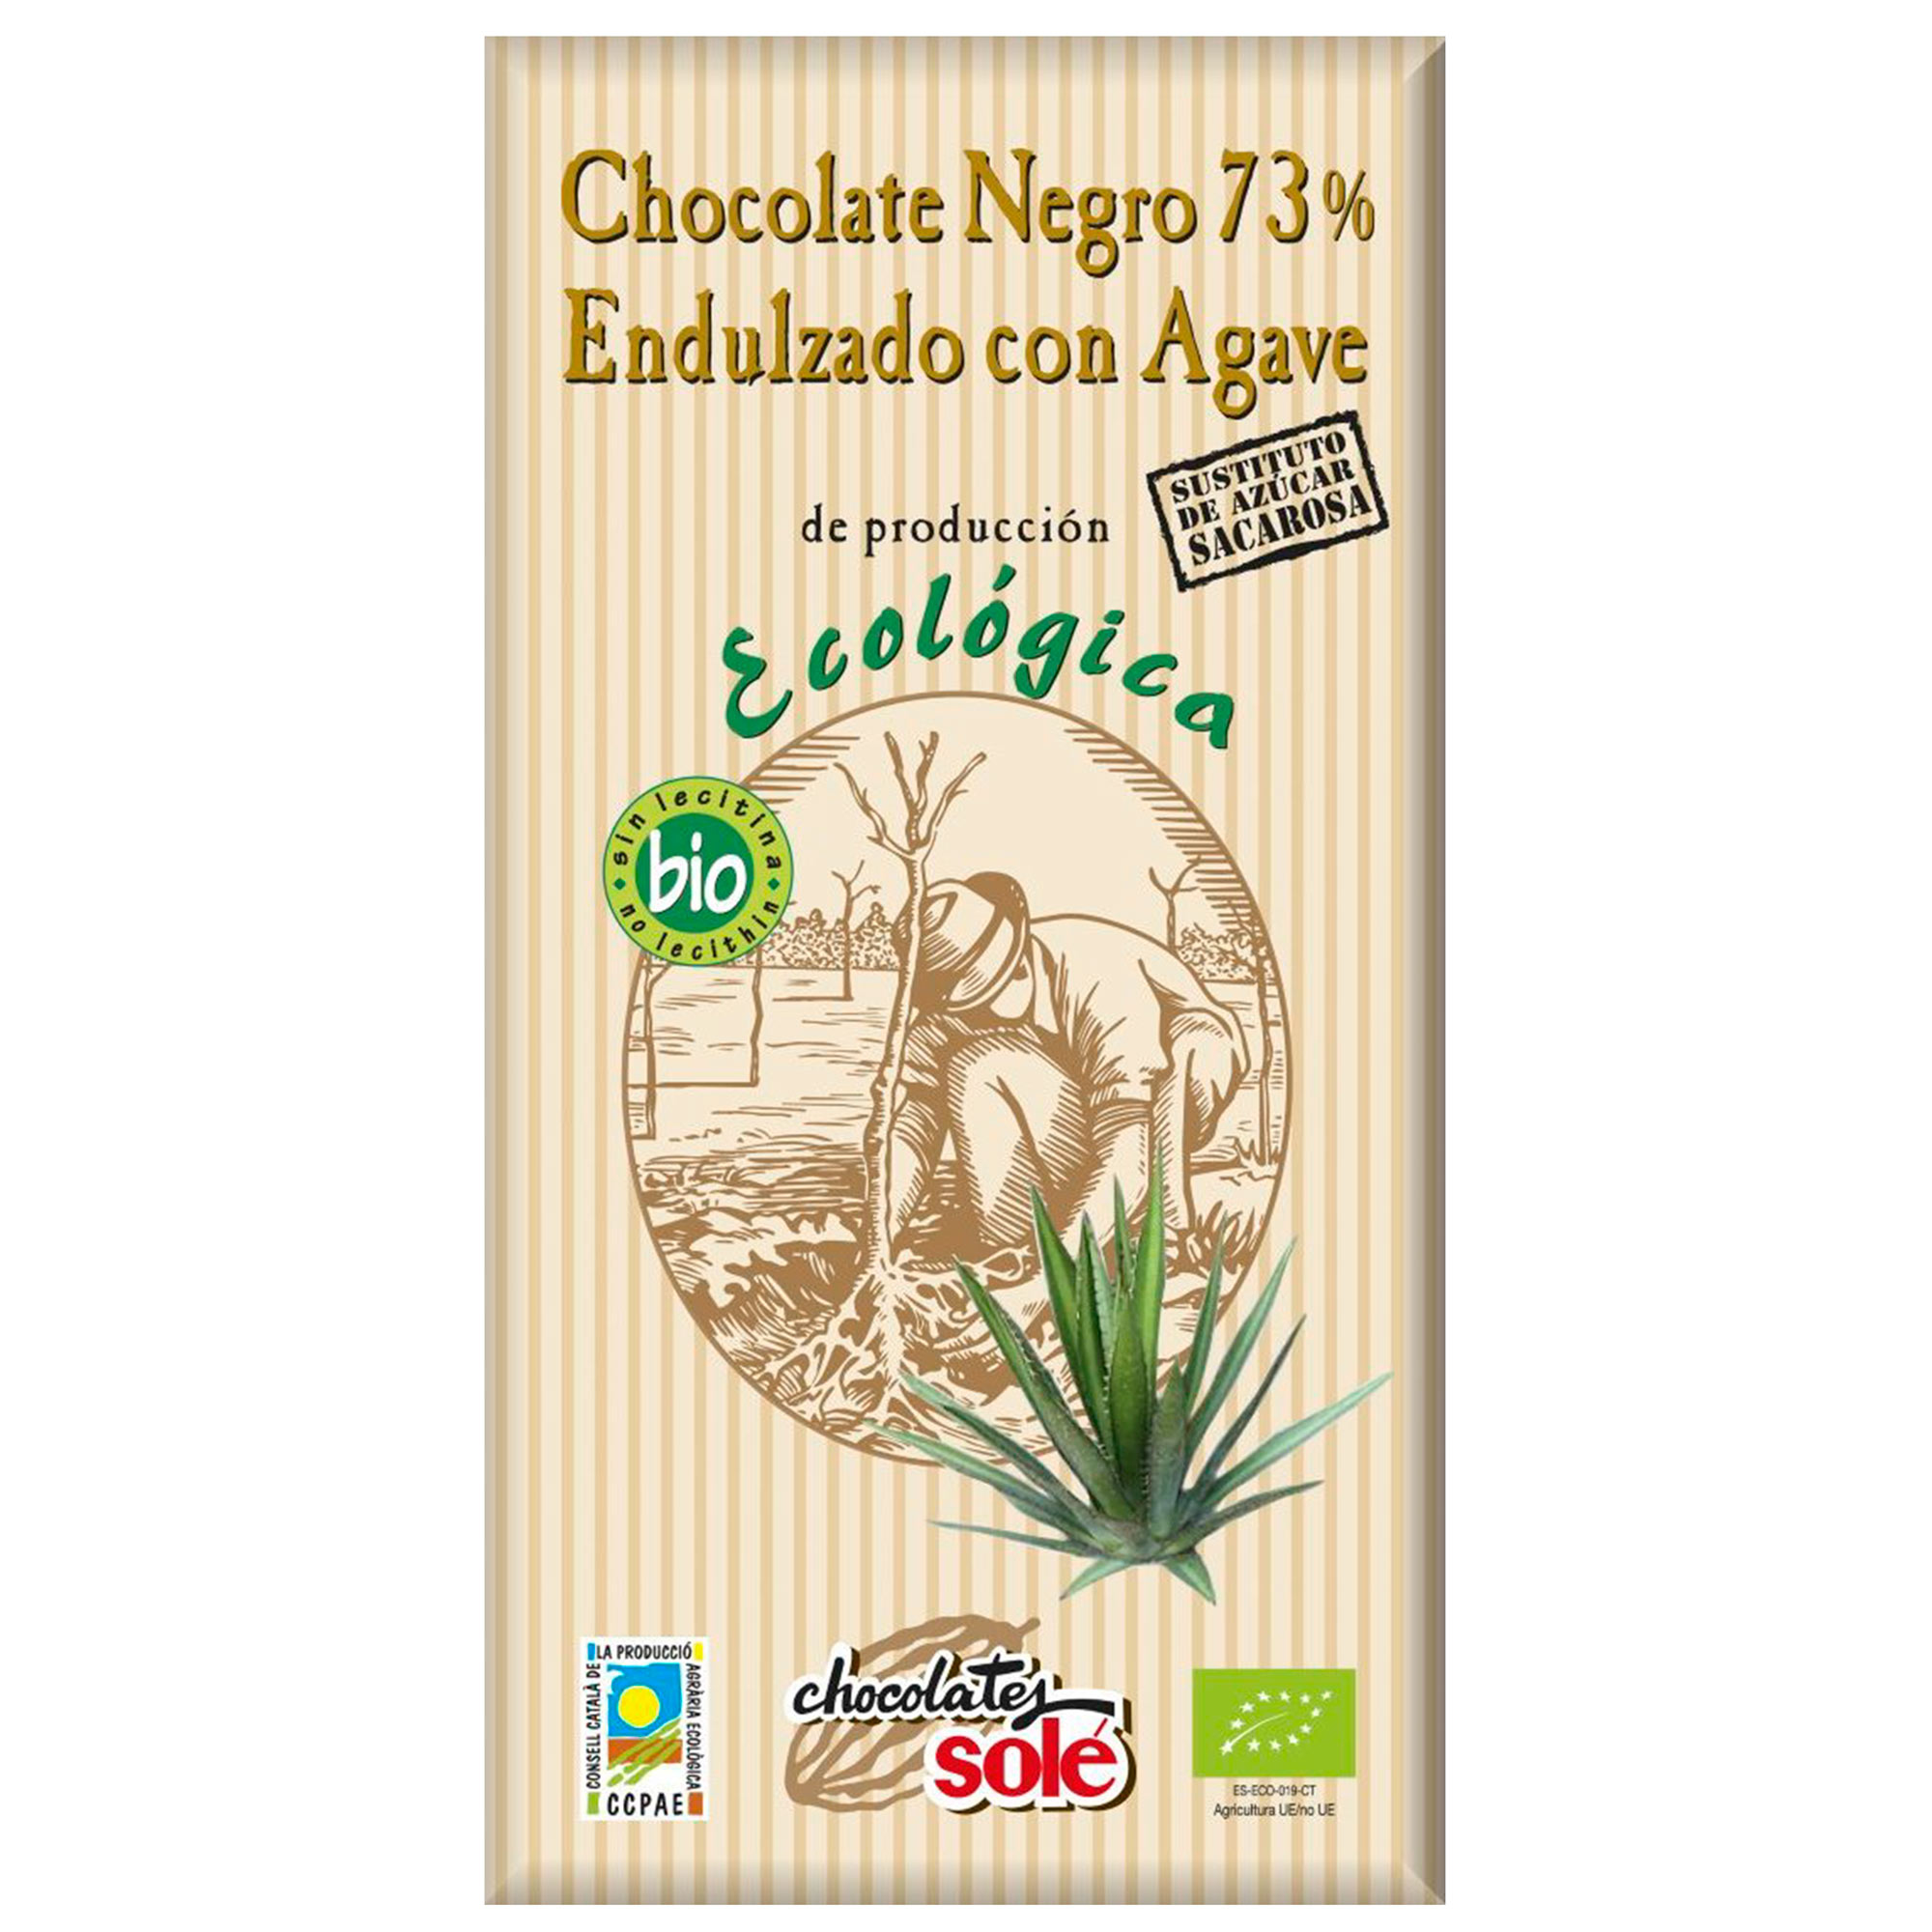 Шоколад темный Sole 73% с агавой 100 г шоколад темный 73% sole с оливковым маслом 100 гр